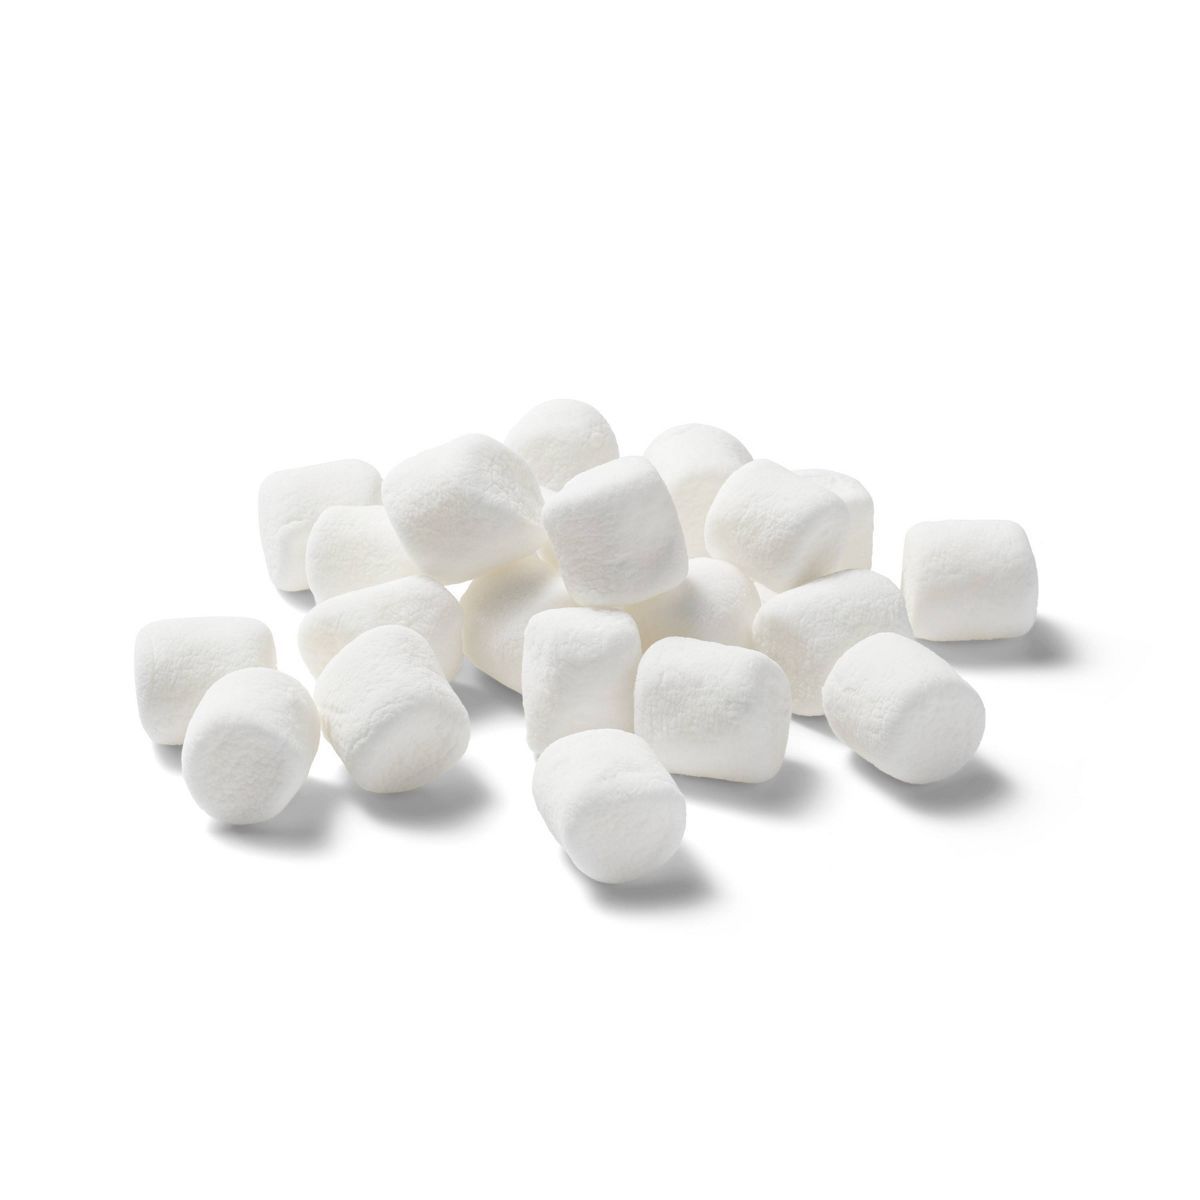 Mini Marshmallows - 10oz - Good & Gather™ | Target